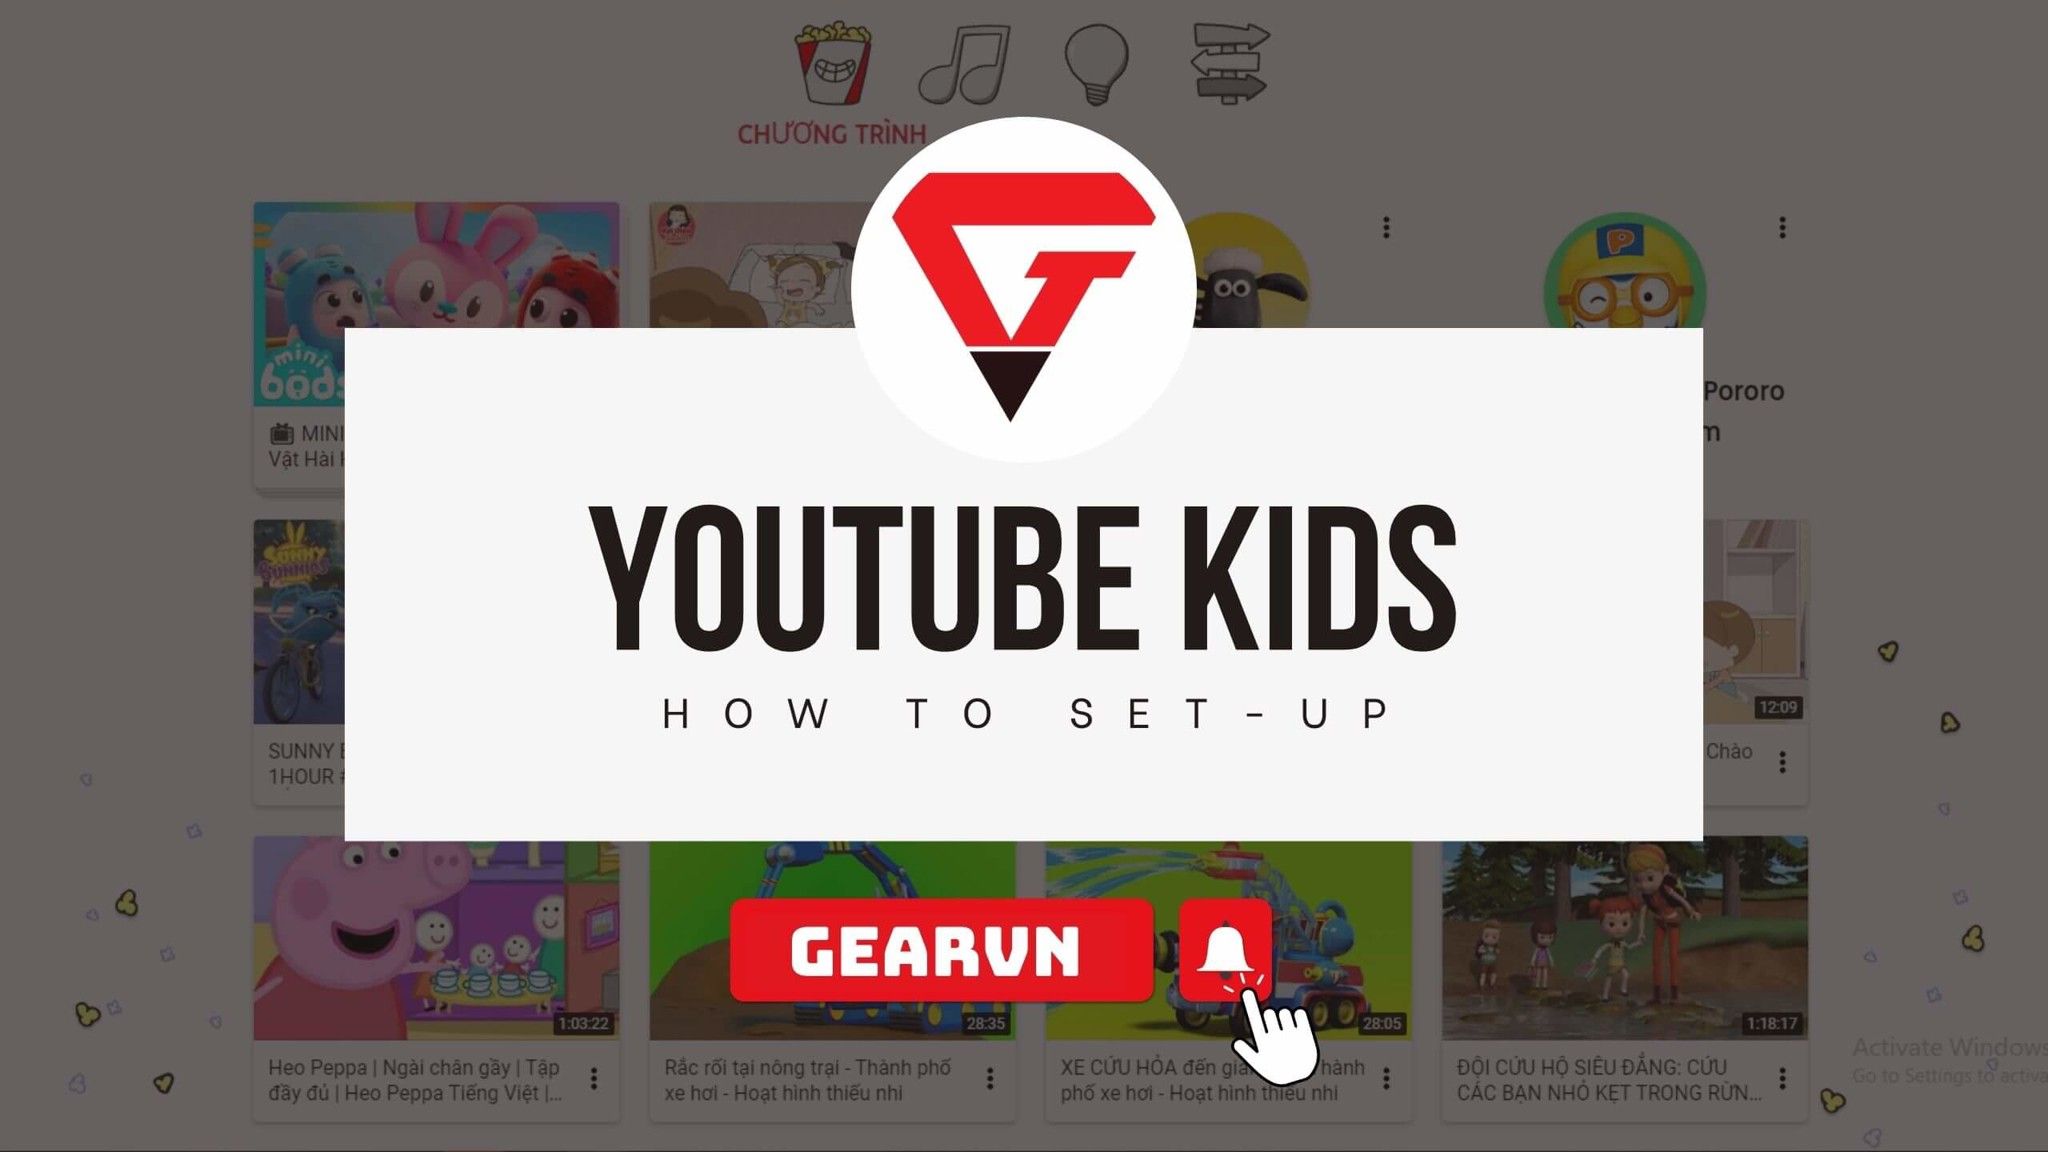 Hướng dẫn tải và sử dụng YouTube Kids an toàn cho trẻ em